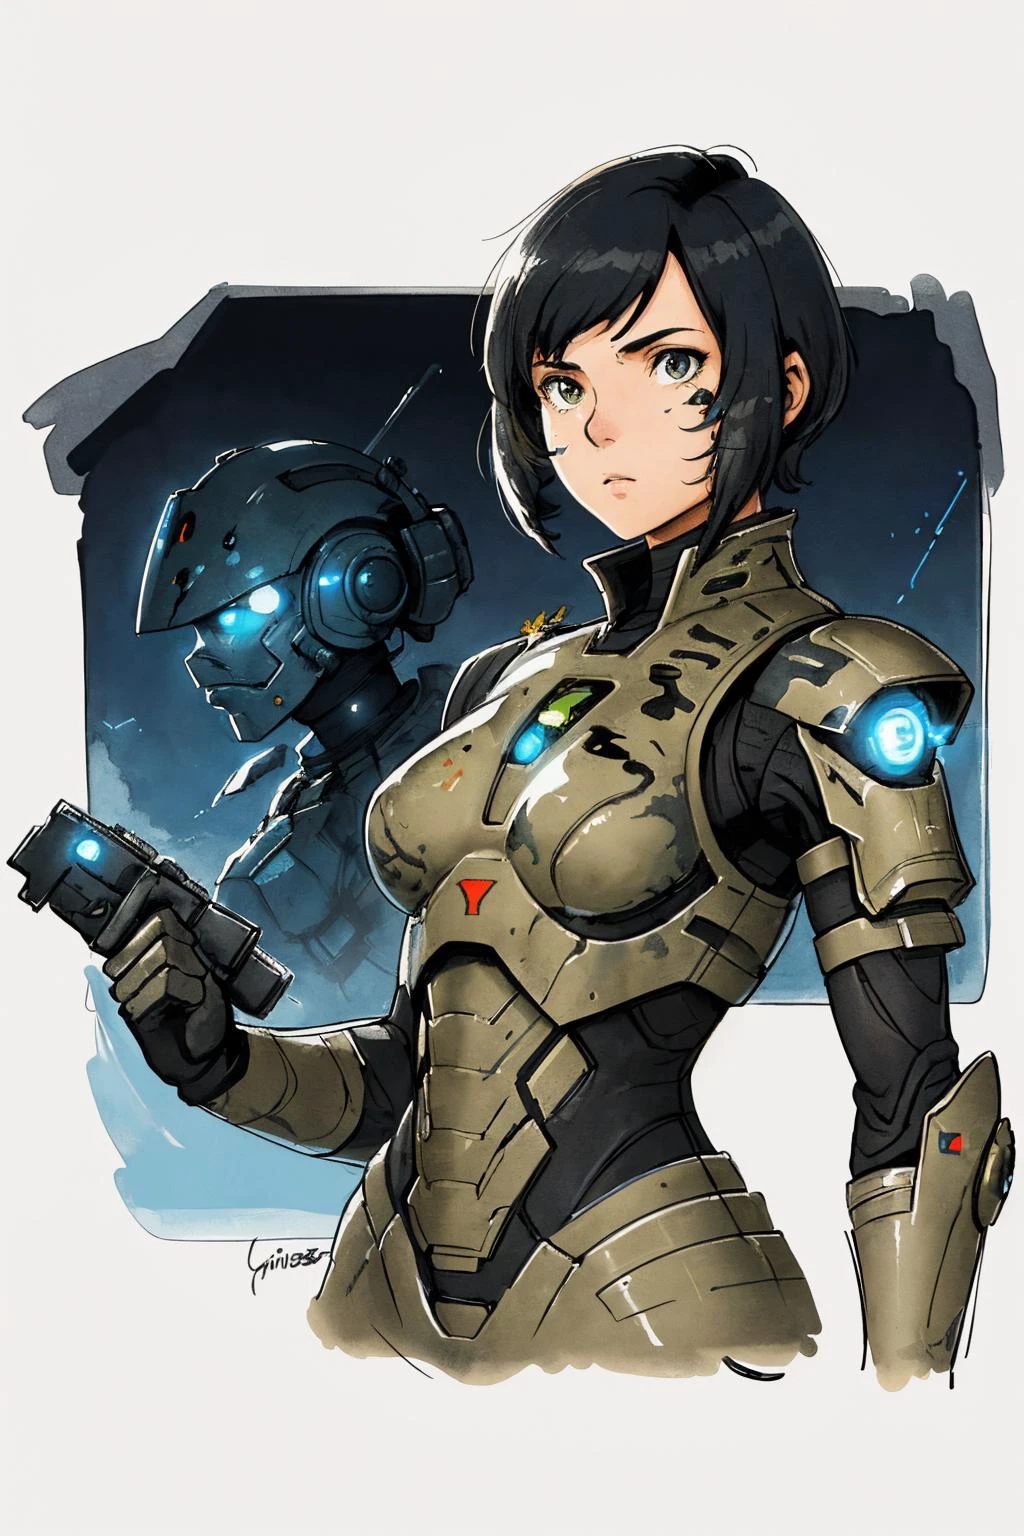 1名女兵, 装甲 ,特写, 科幻, (克里斯·福斯, 未来派, 水墨素描 )